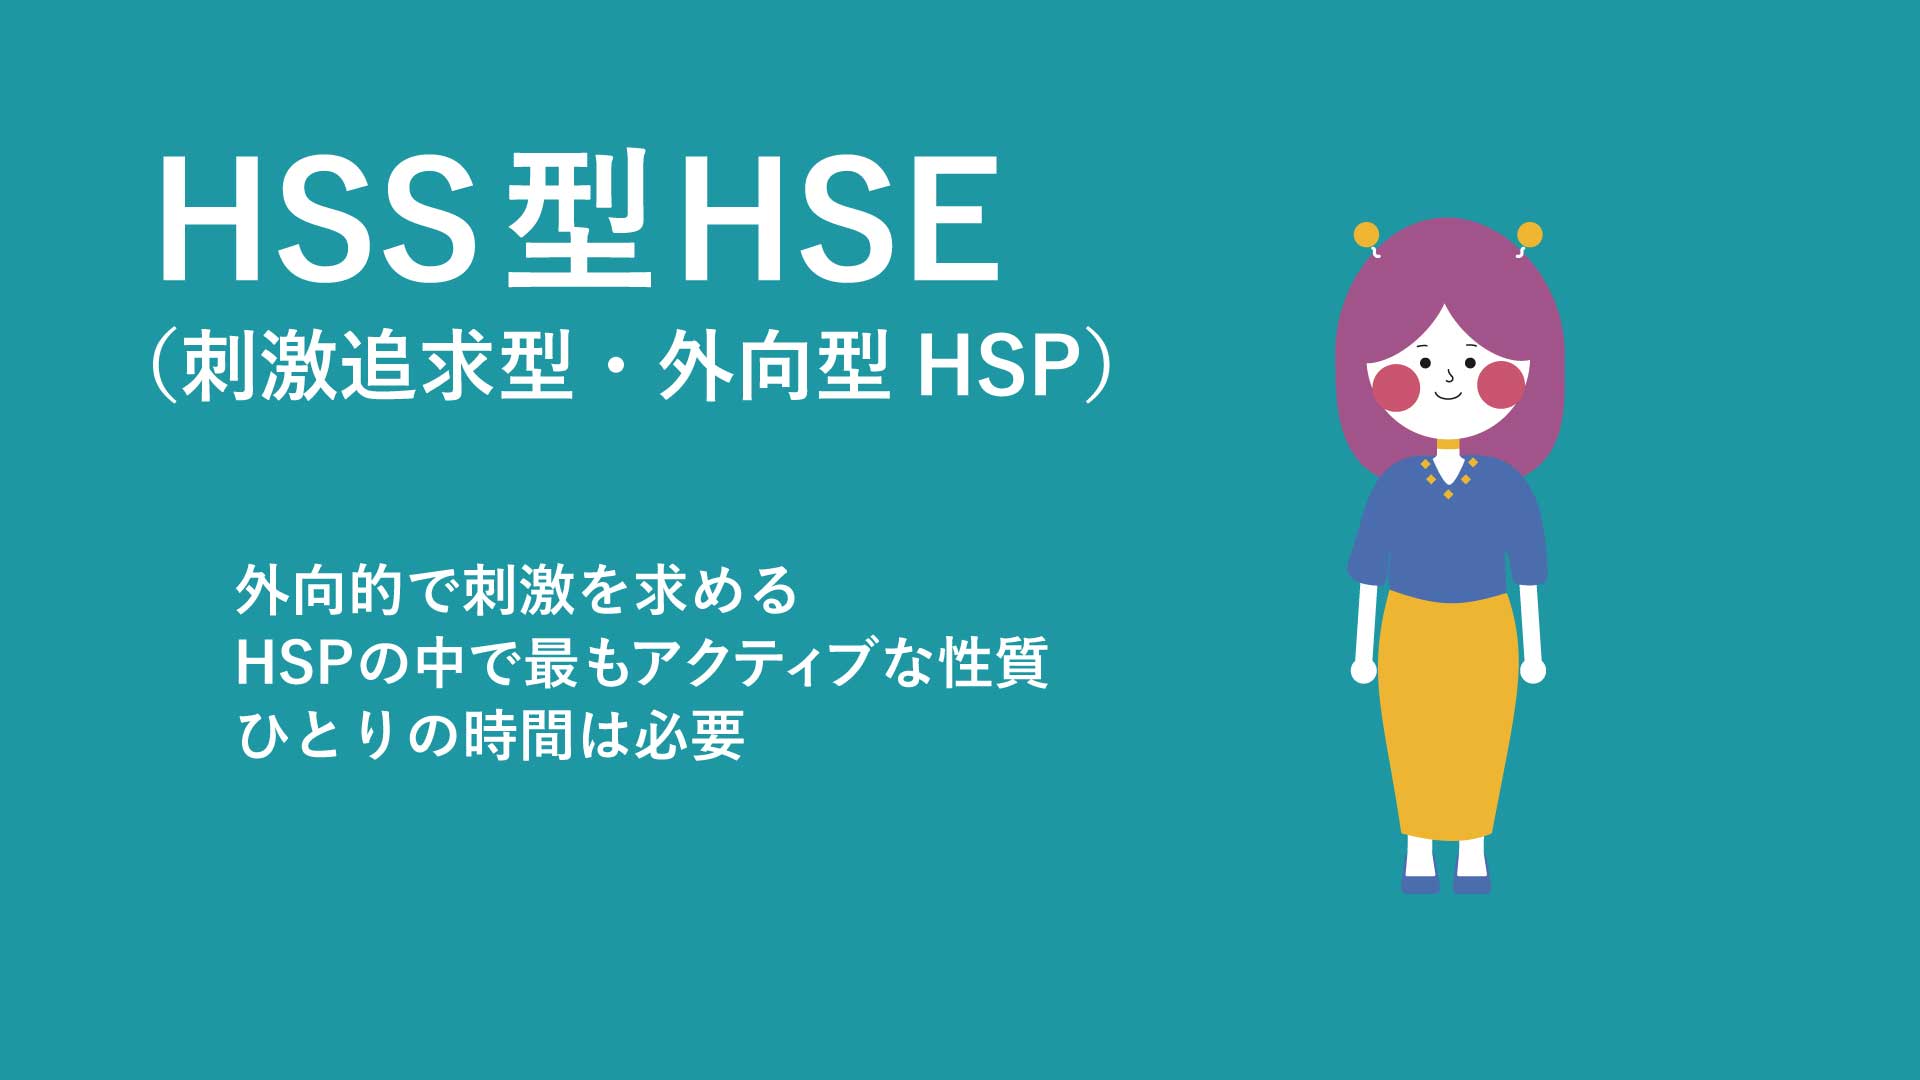 HSS型HSEさん.jpg